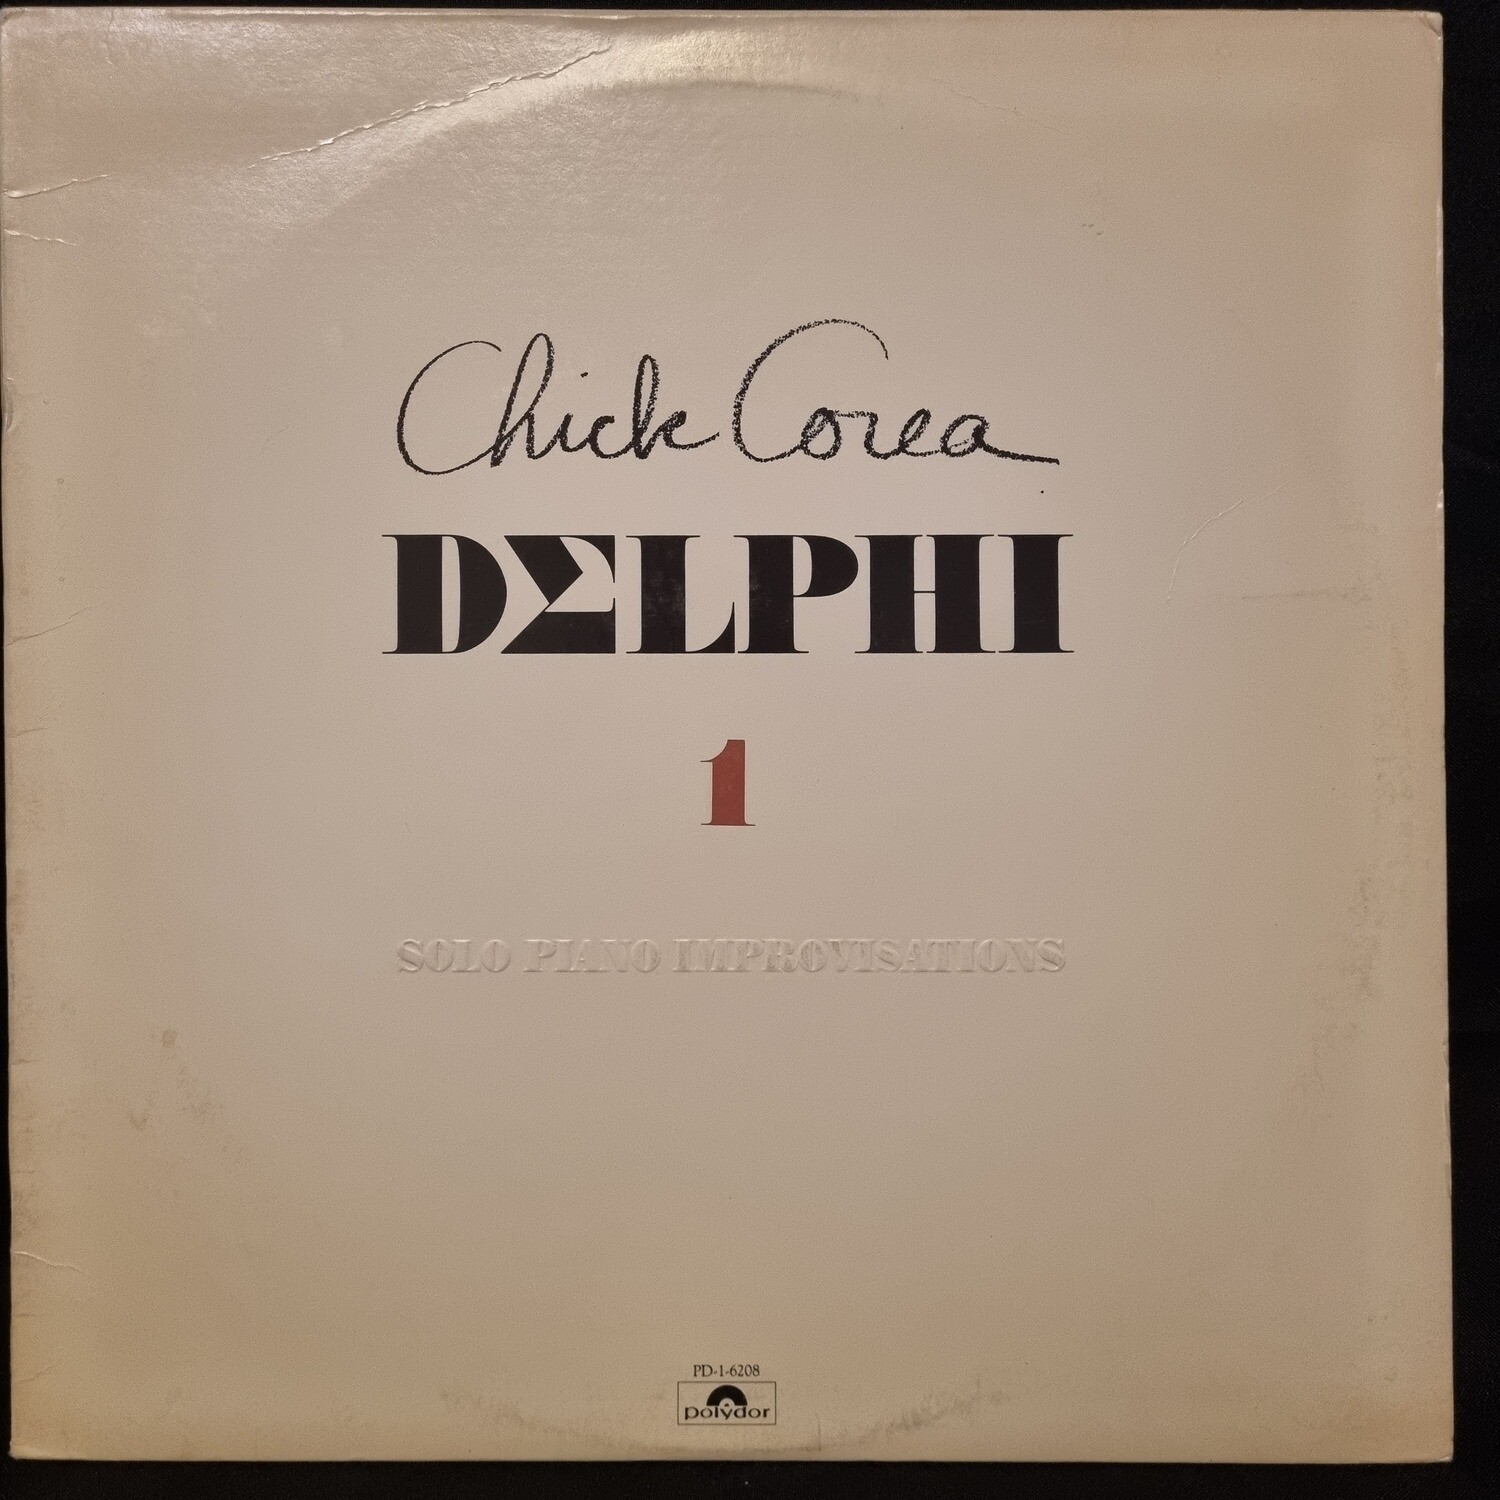 Chick Corea- Delphi 1 Solo Piano Improvistions